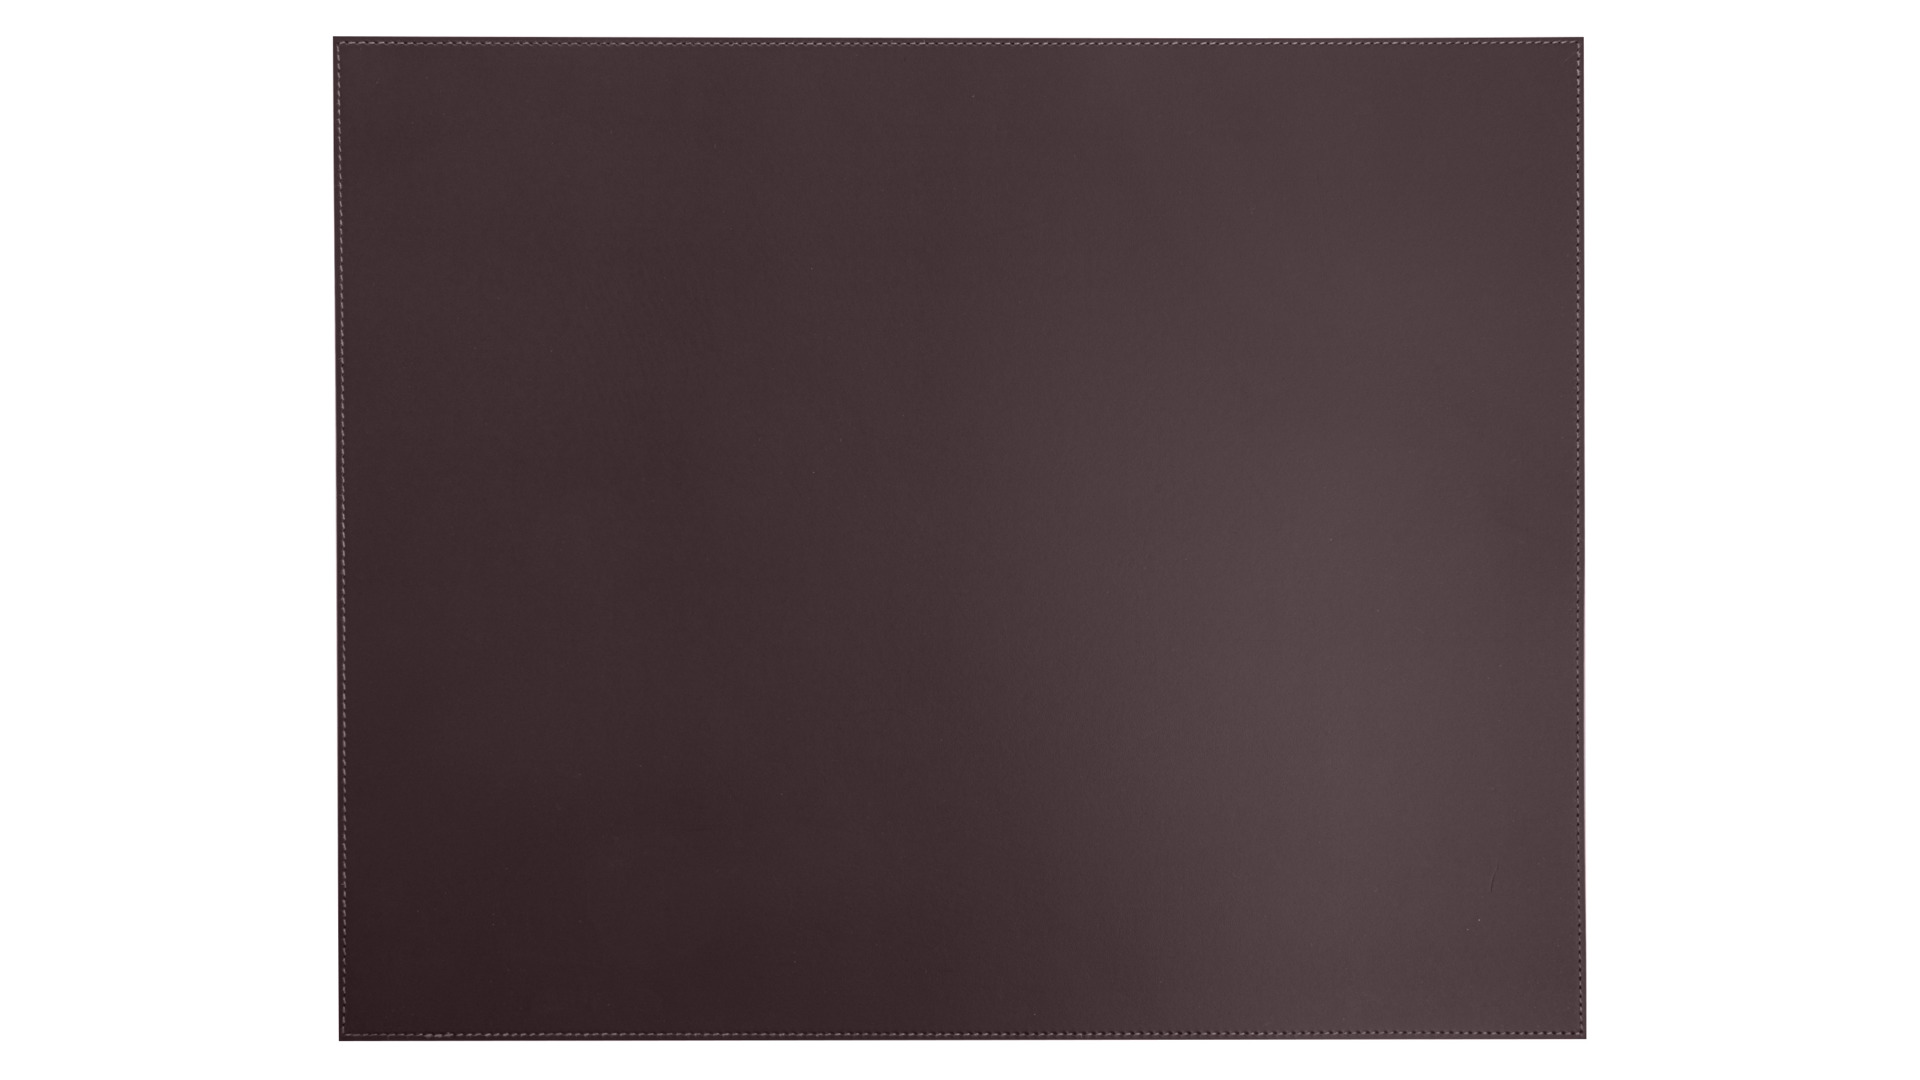 Набор салфеток подстановочных прямоугольных Rudi Питагора 49,5х39,5 см, мокко, 6 шт